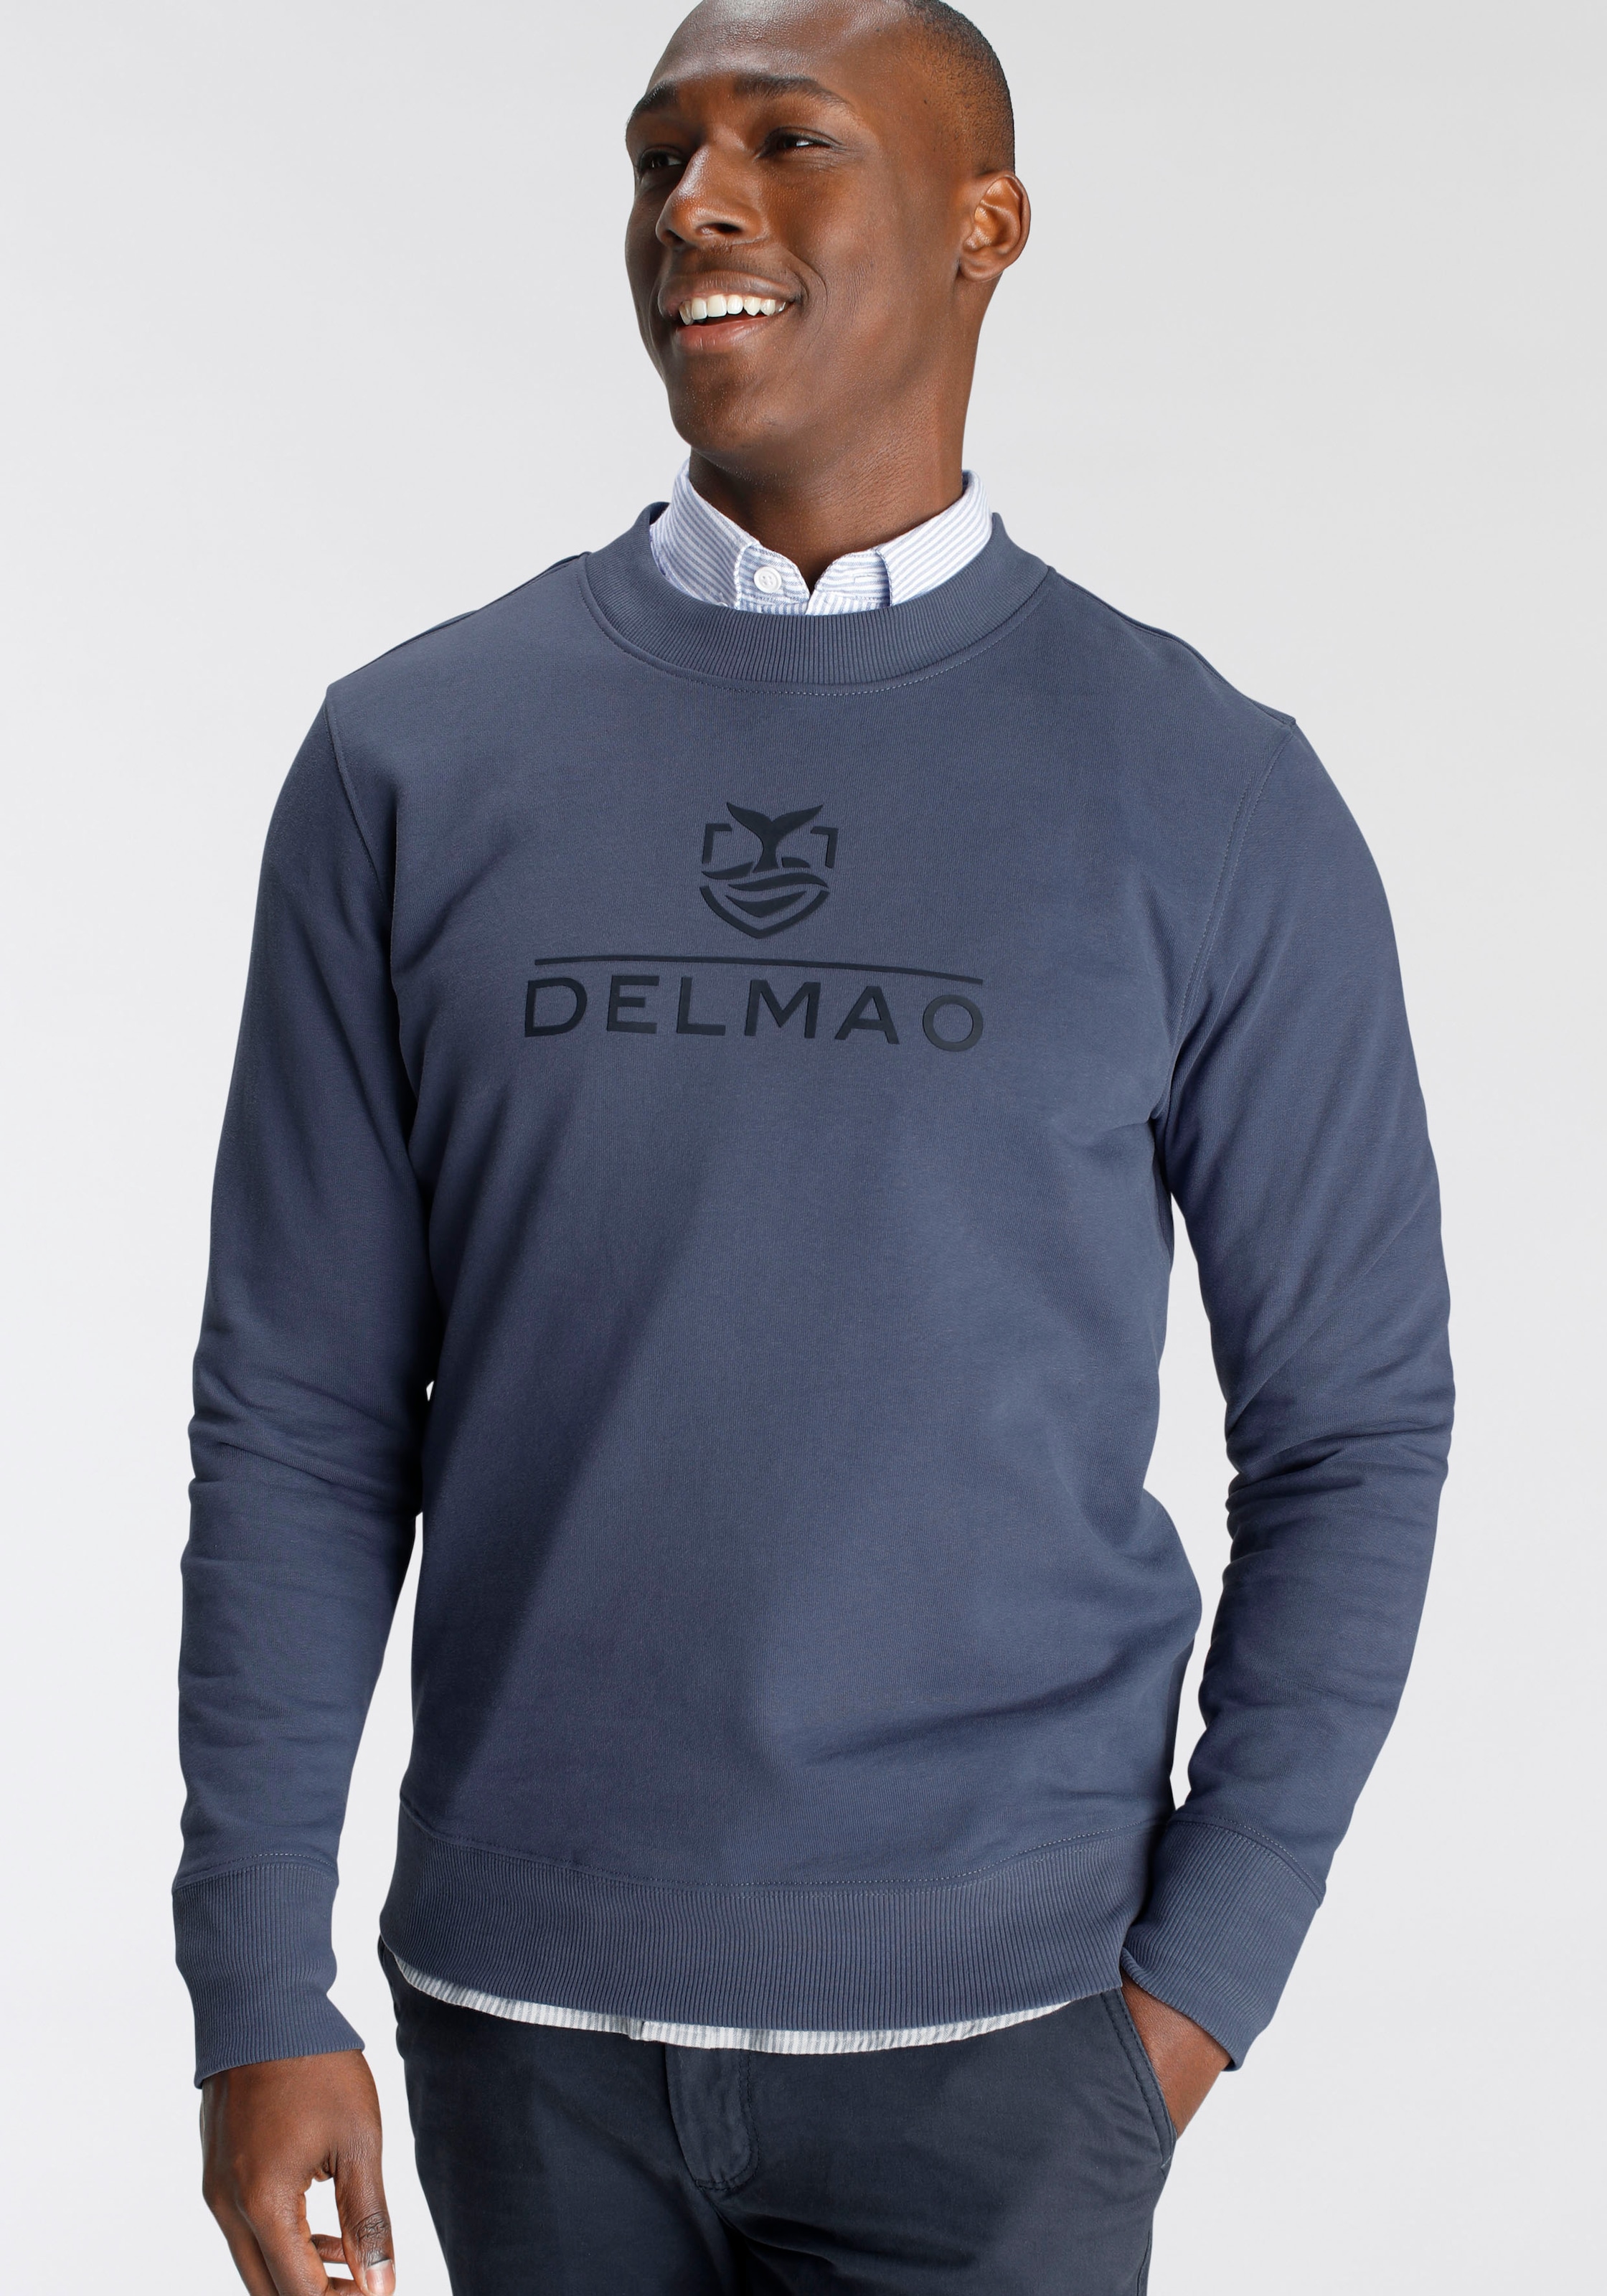 DELMAO Sweatshirt, mit Markenprint- NEUE MARKE! bei online kaufen OTTO